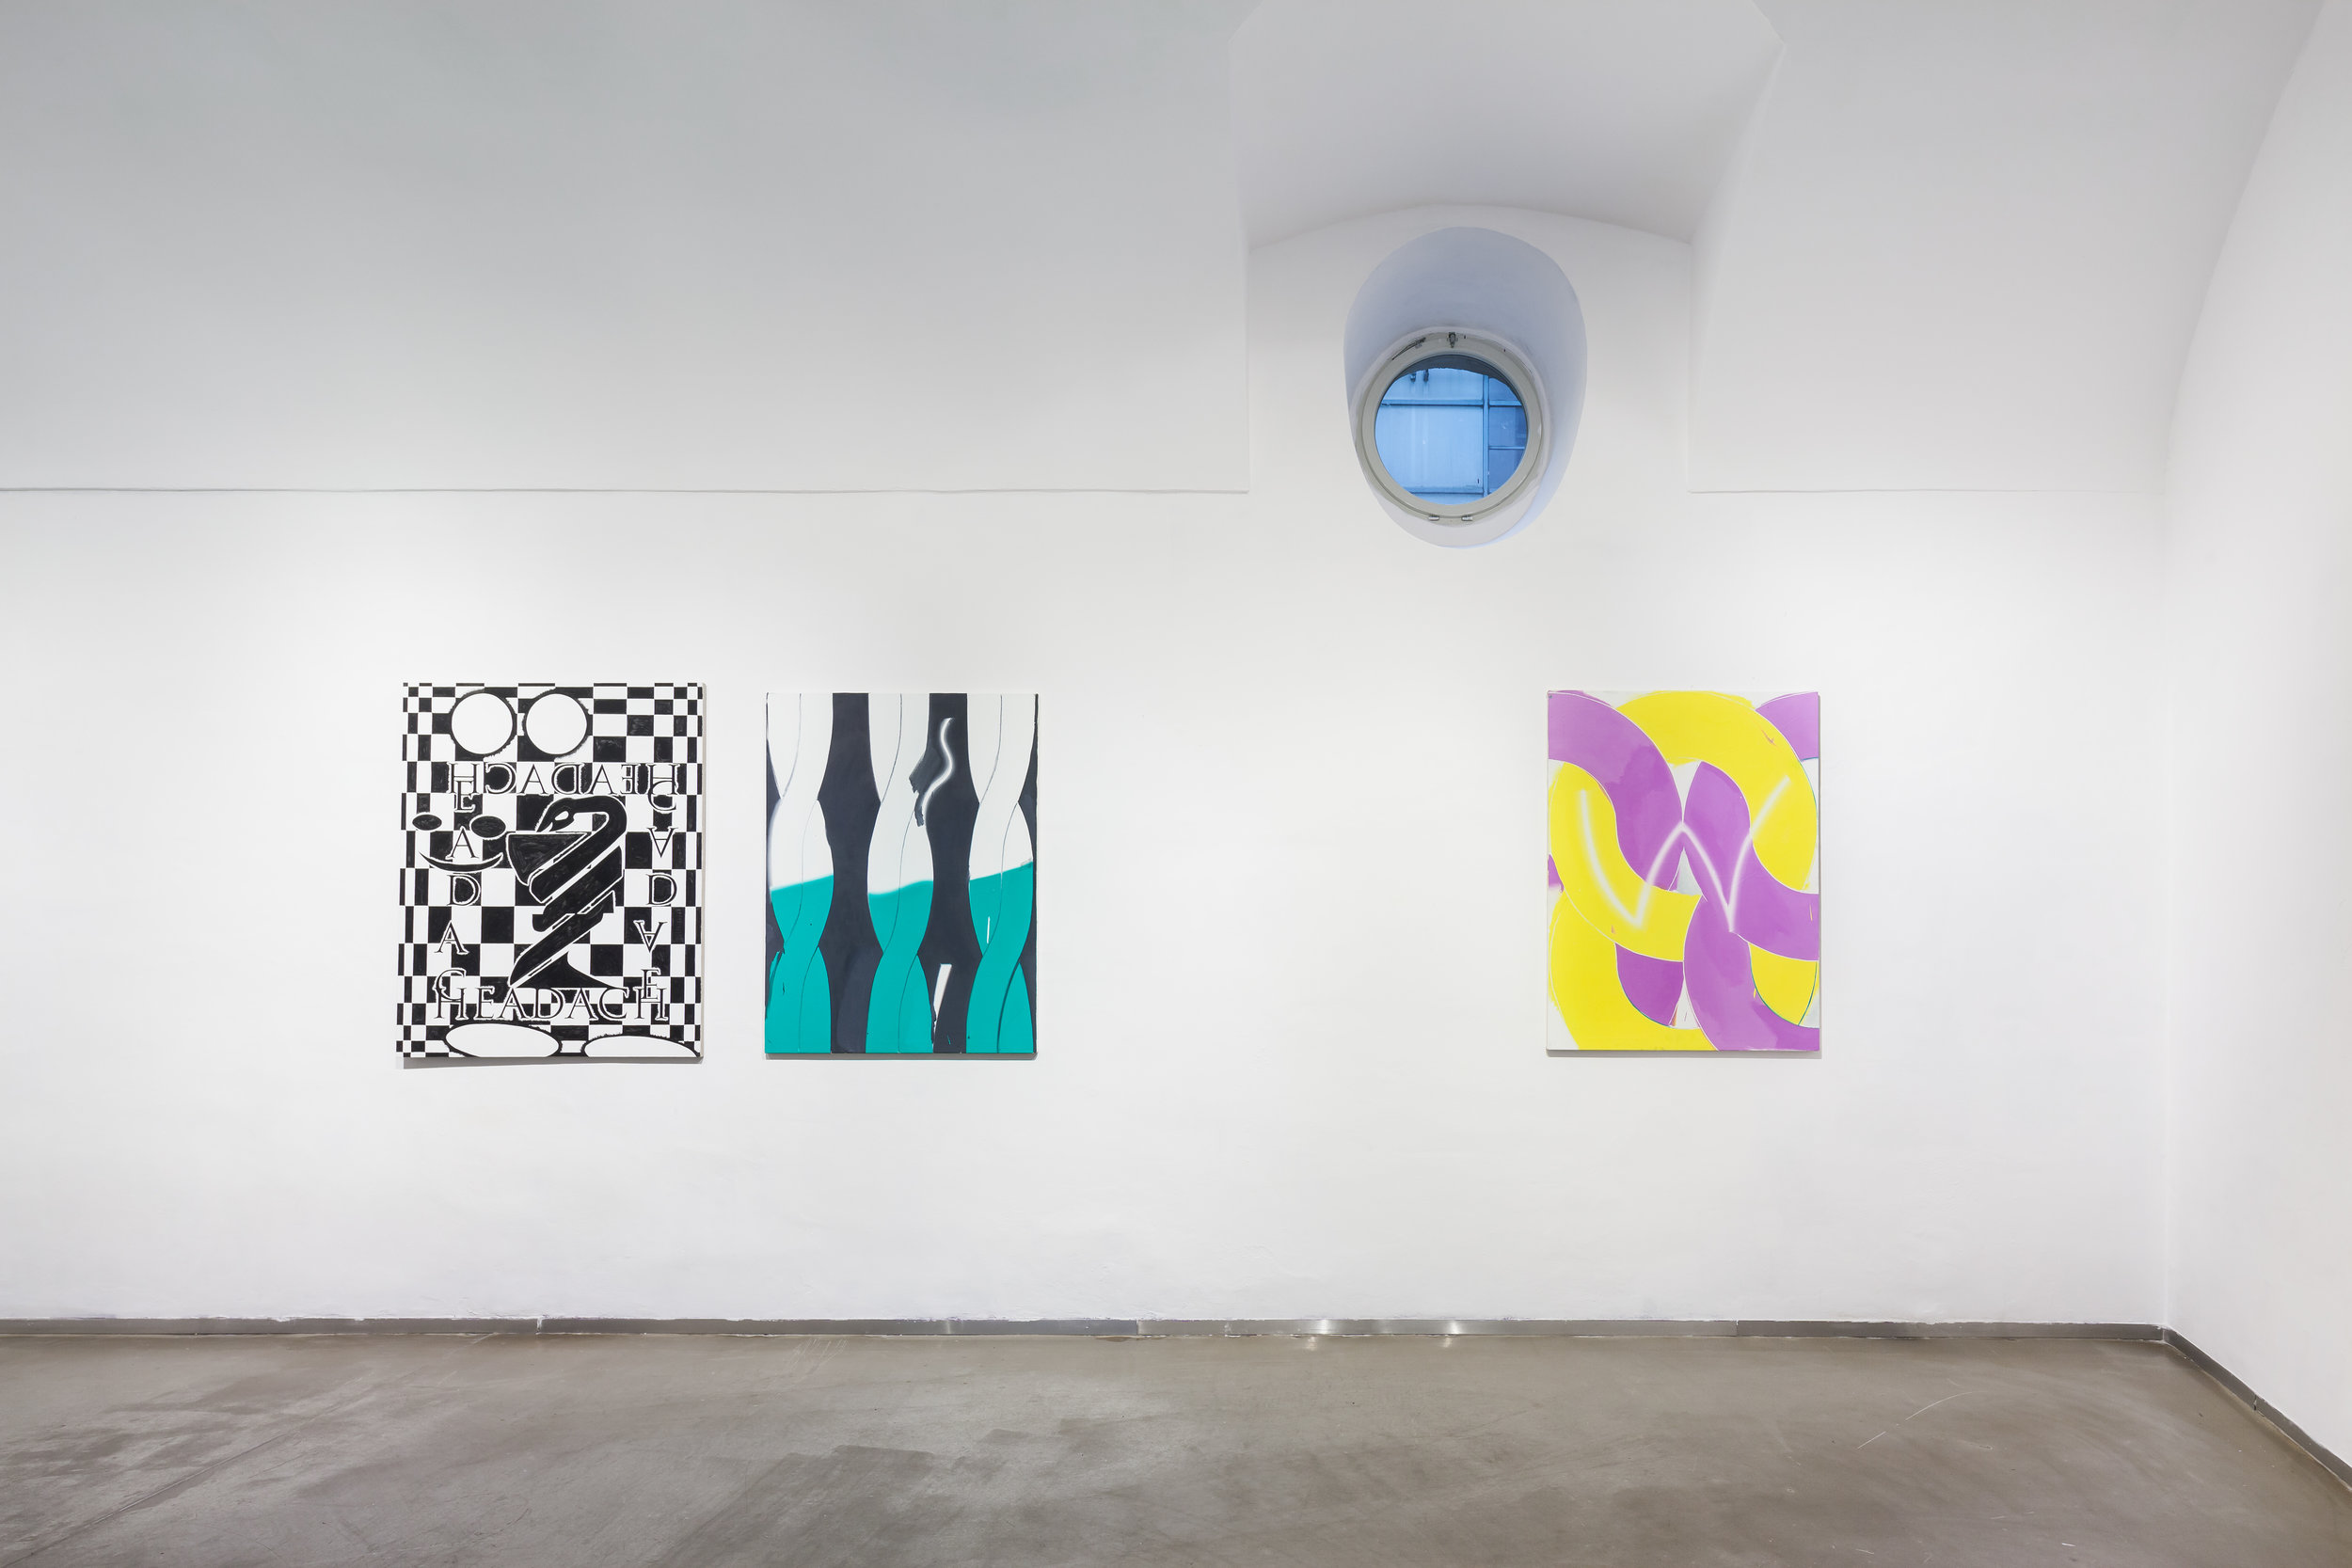  from left: Cezary Poniatowski,  Headache , 2016, acrylic on canvas, 70 x 56 cm Tomáš Absolon,  Mandrugada I , 2016, oil on canvas, 120 x 90 cm Tomáš Absolon,  Untitled III , 2016, oil on canvas, 120 x 90 cm 